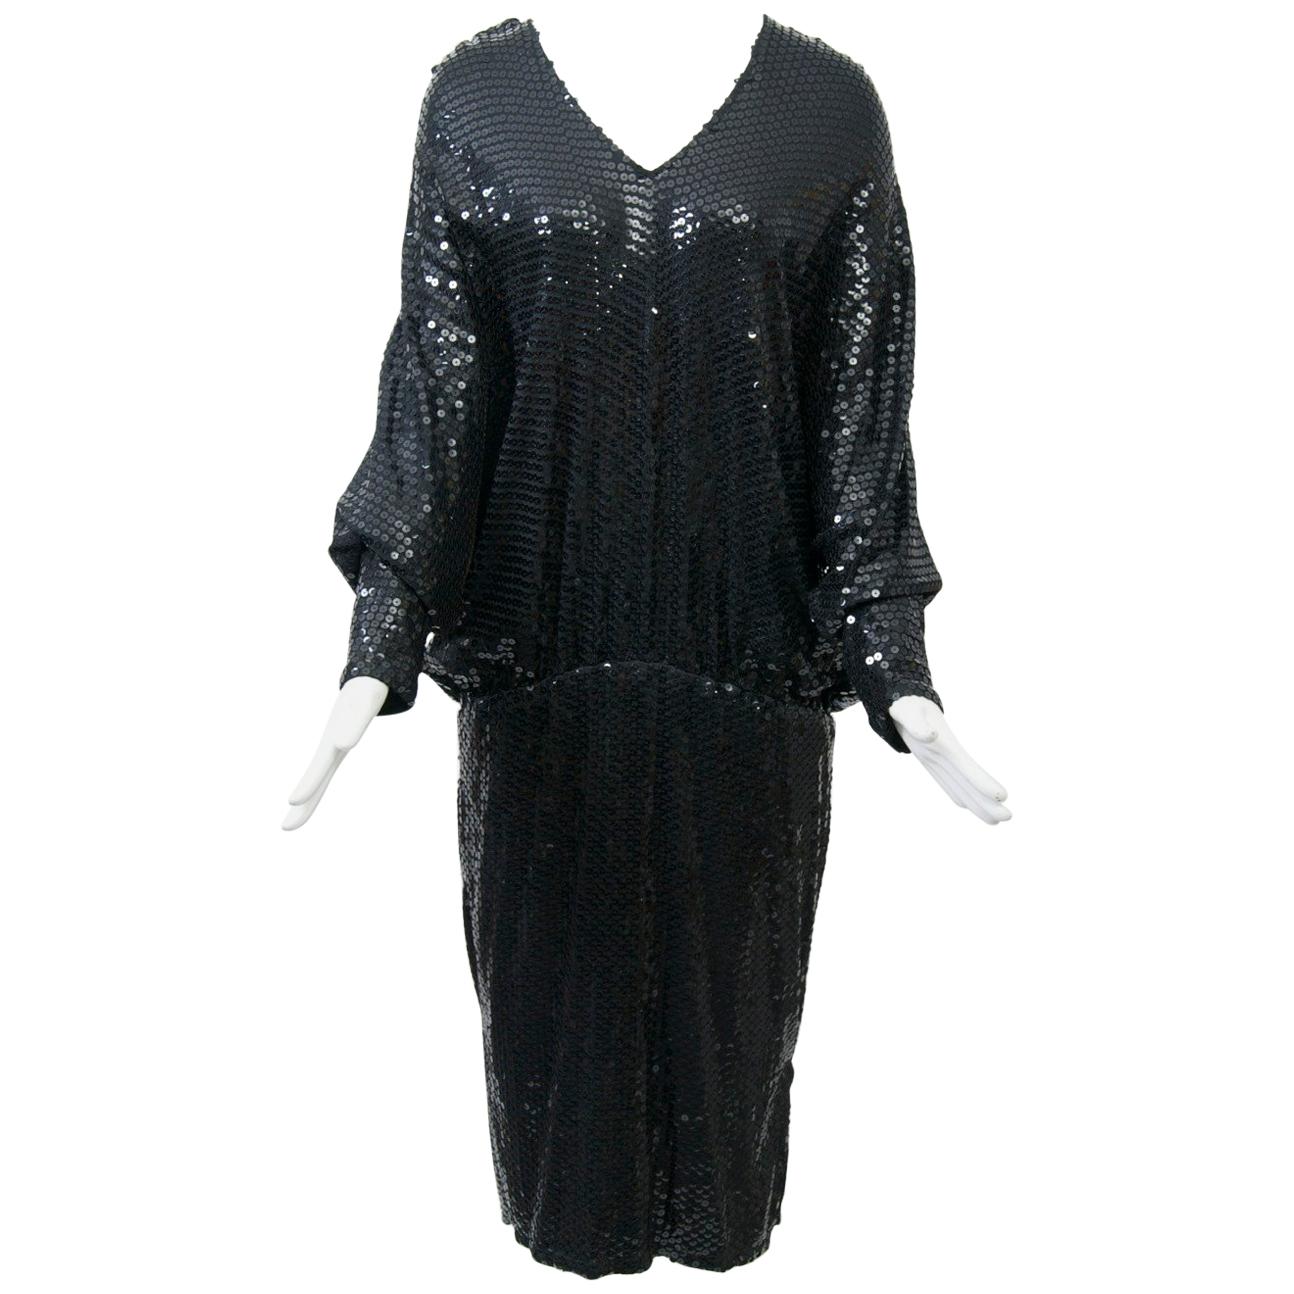 1980s Black Sequin Dress